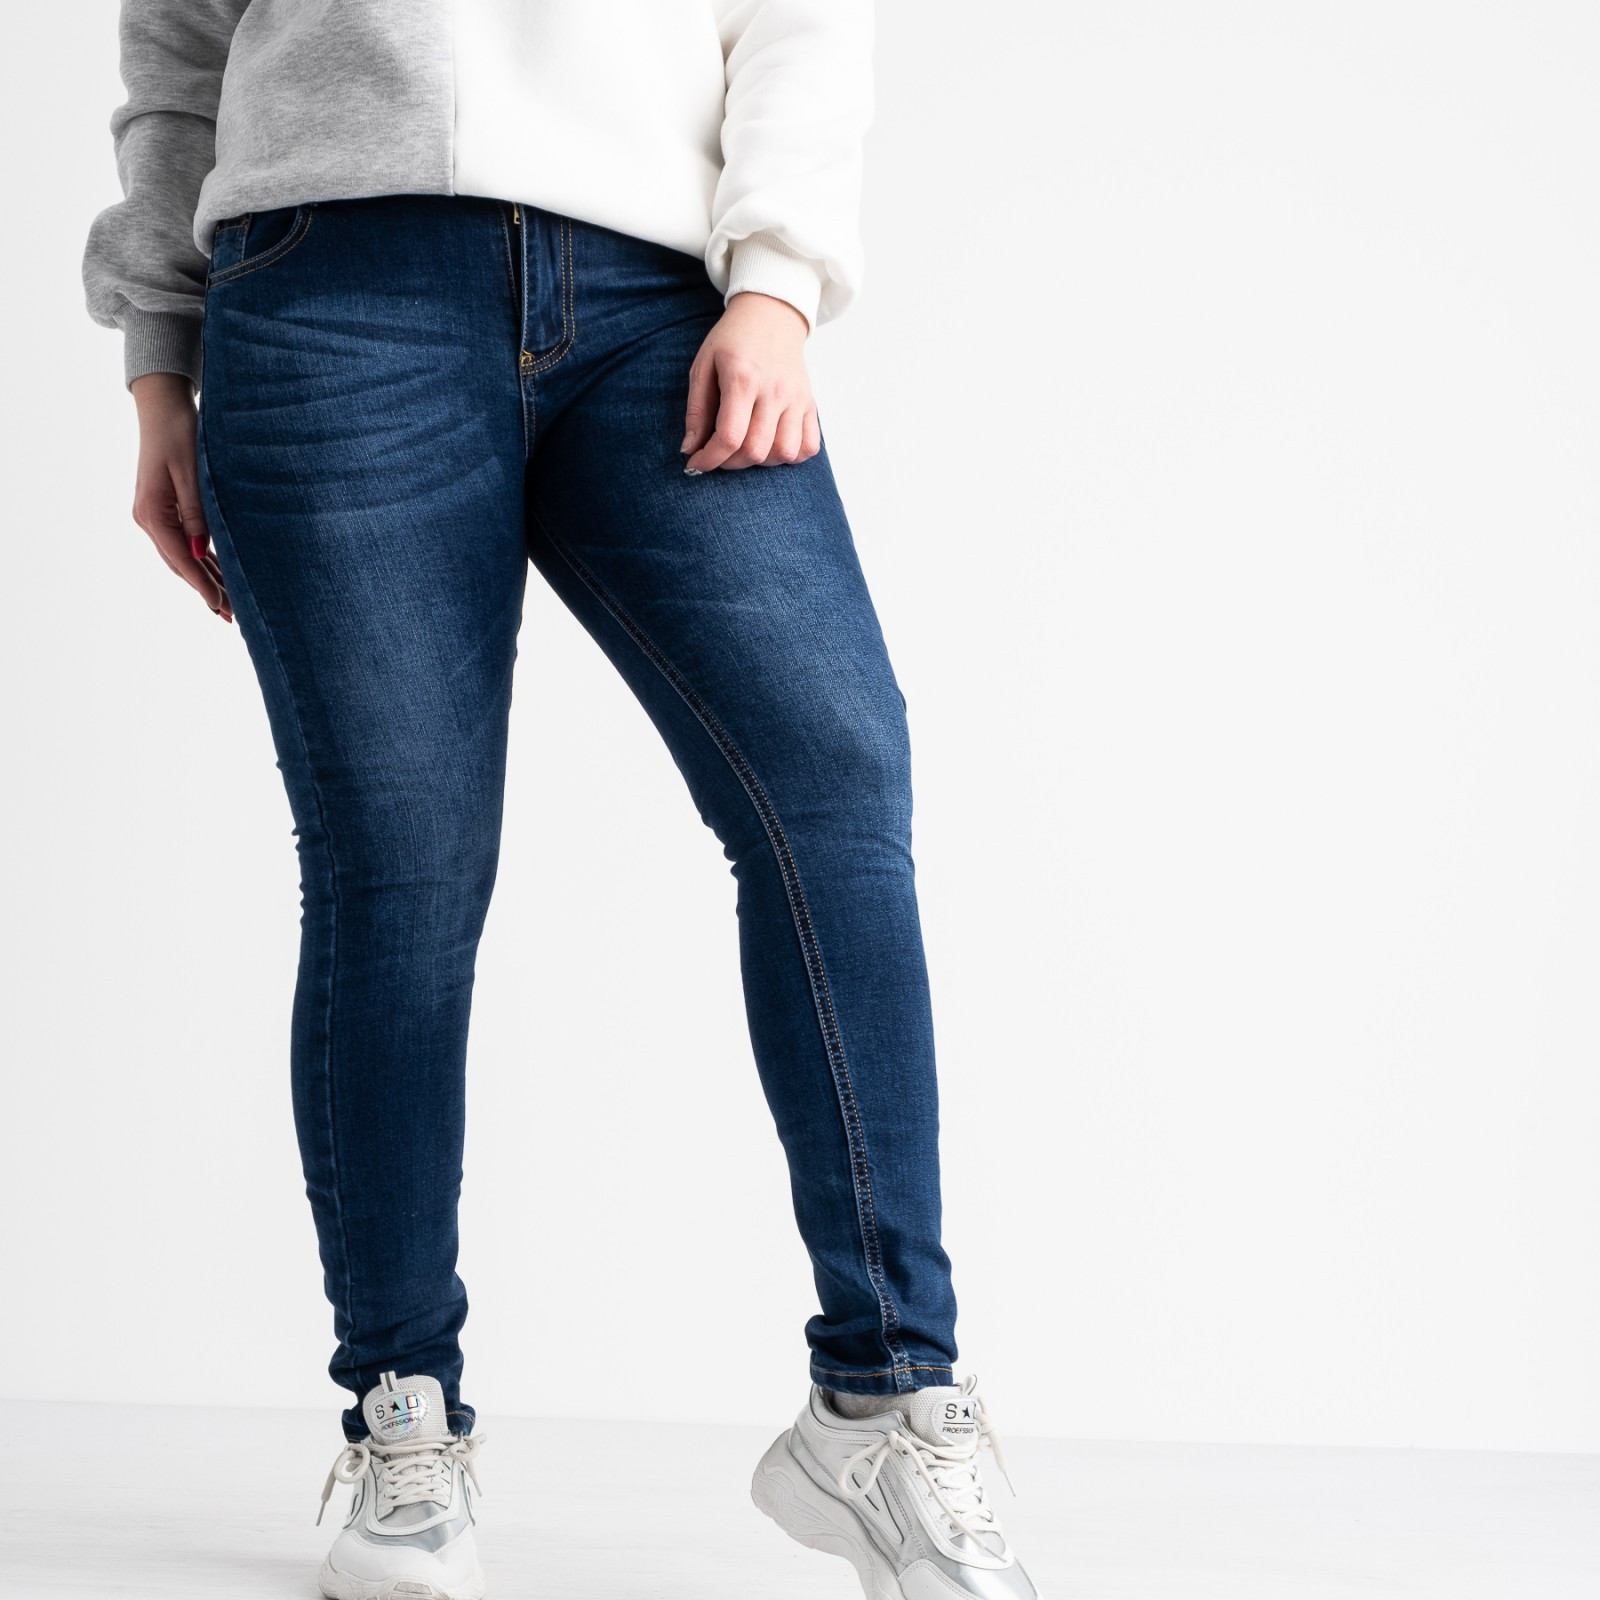 0803 Fashion jeans джинсы батальные женские синие стрейчевые (6 ед. размеры: 30.31.32.33.34.36)